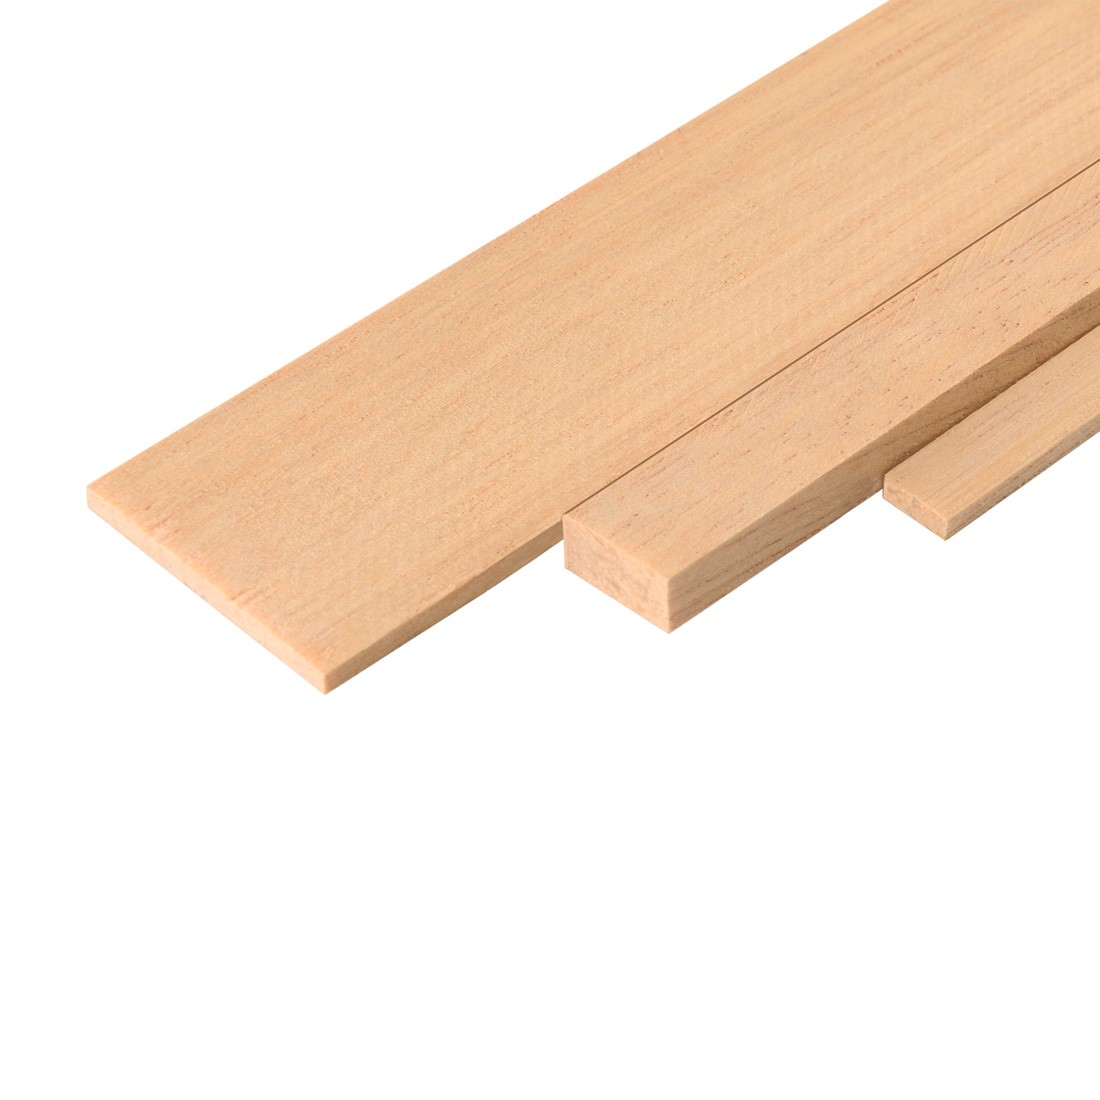 Ramin wood strip mm.1x3